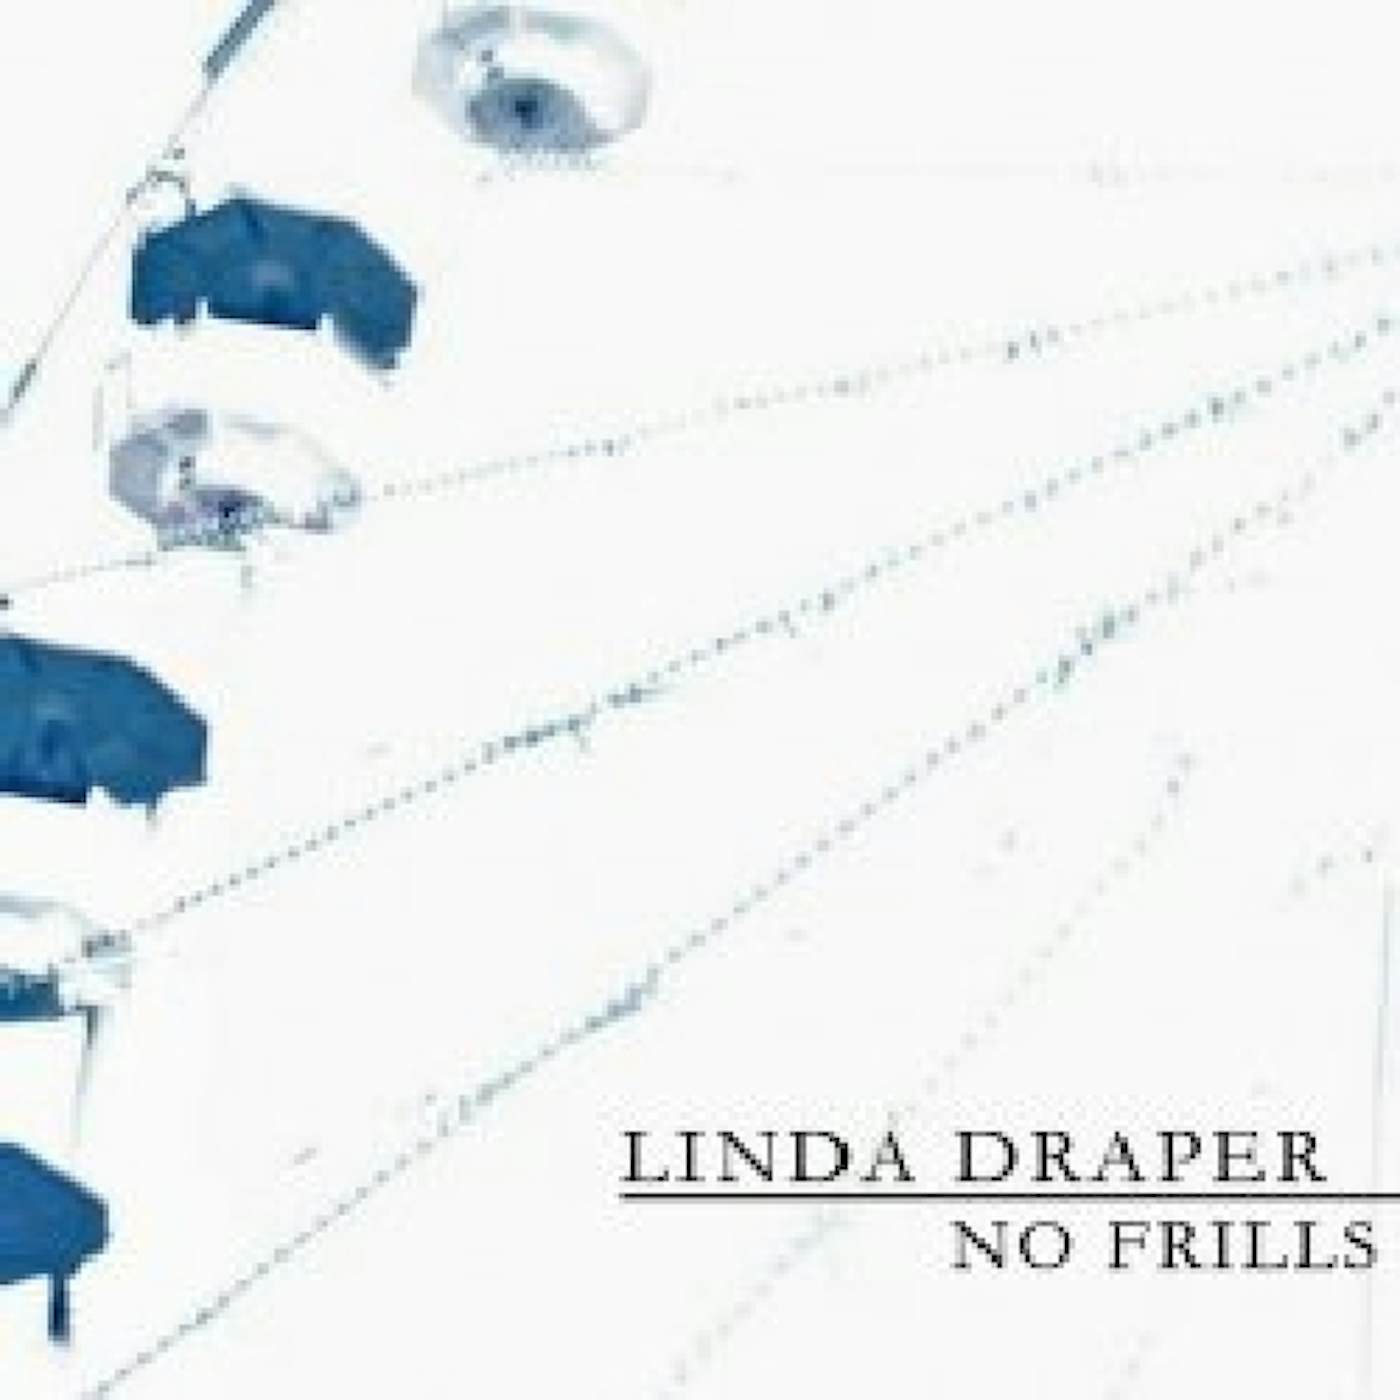 LINDA DRAPER NO FRILLS CD